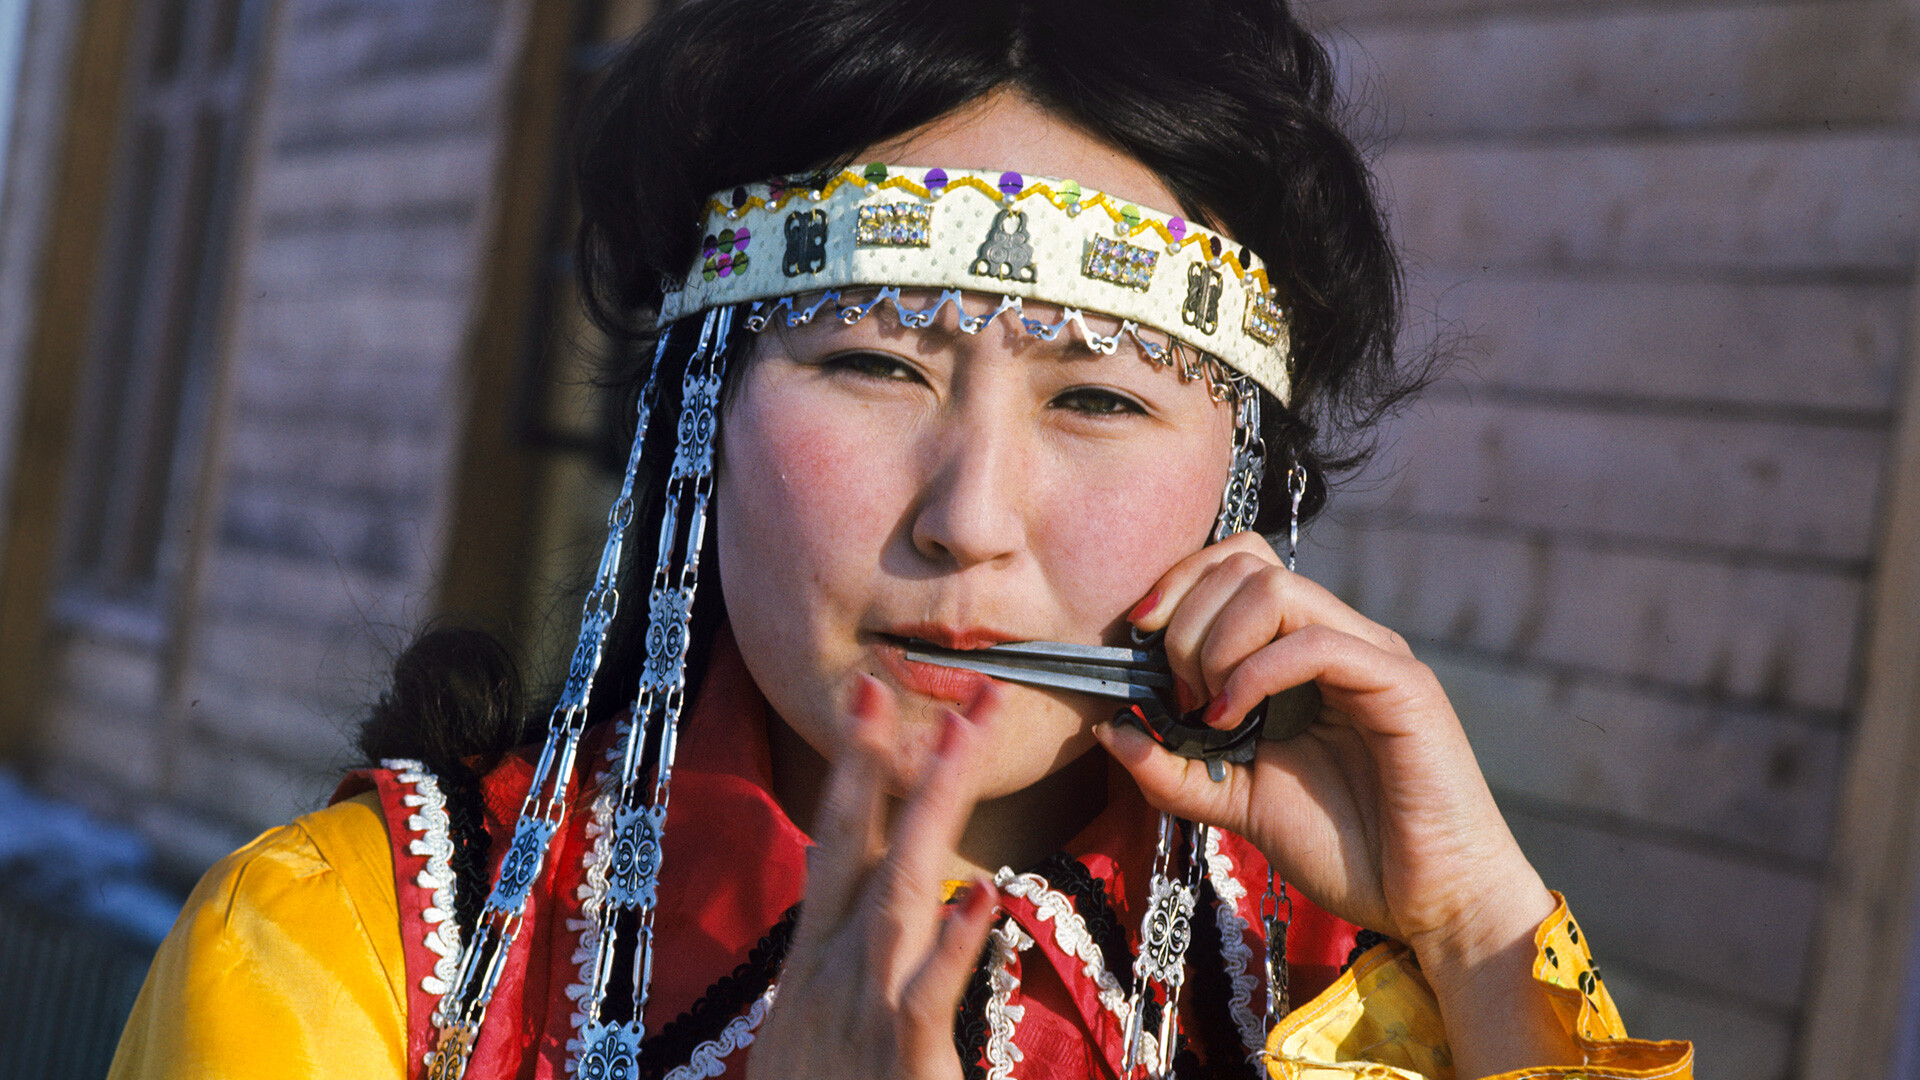 Елена Атласова - исполнительница якутских народных песен на старинном музыкальном инструменте хомусе.